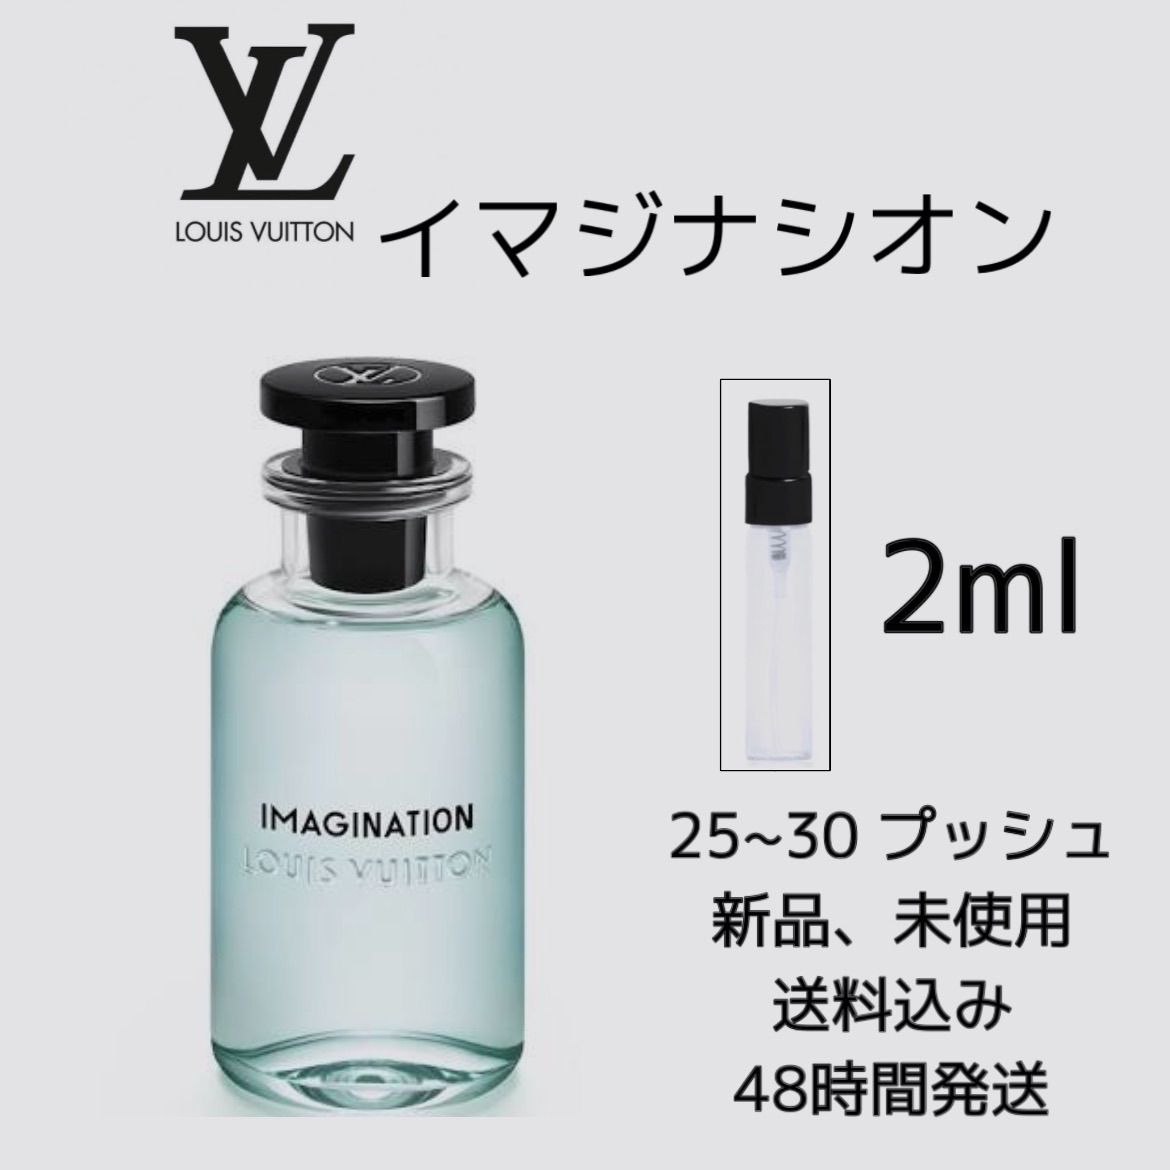 香水 Louis Vuitton Imagination ルイ・ヴィトン イマジナシオン - 香水